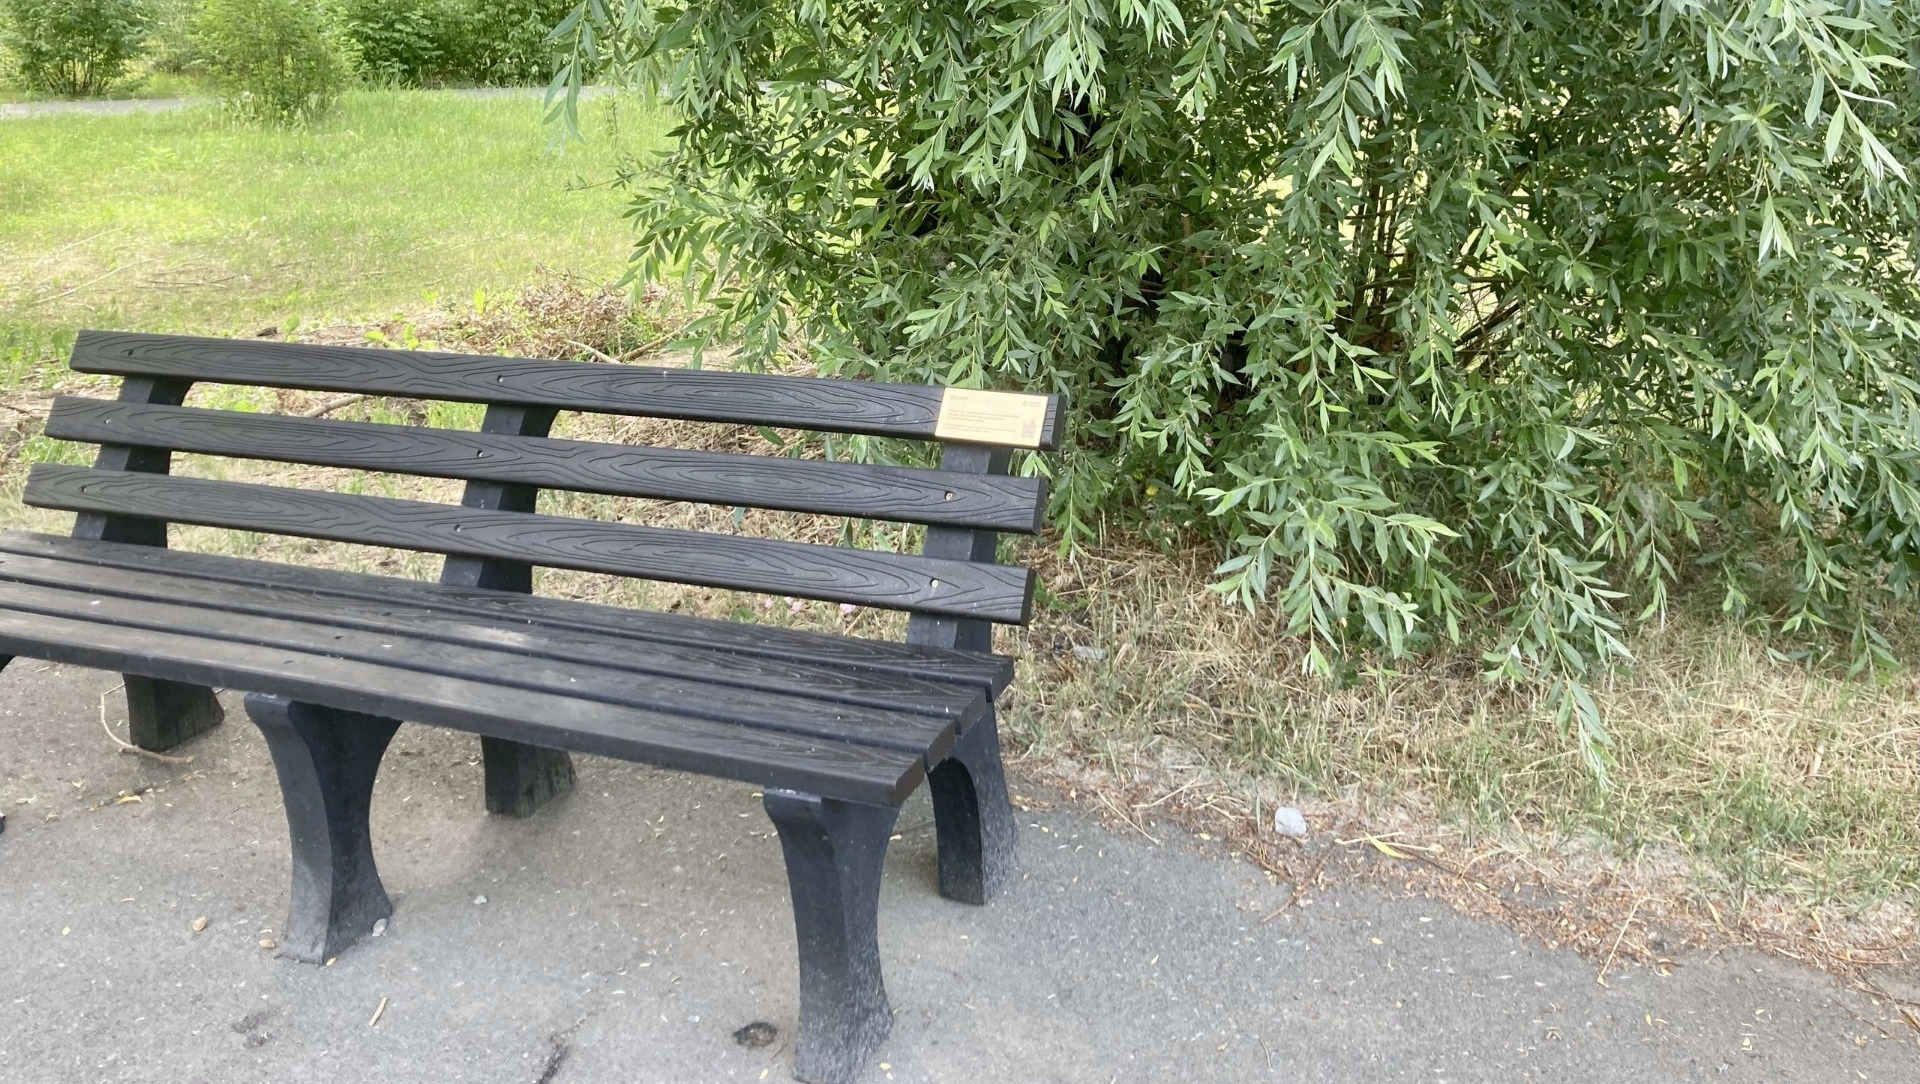 Сбер установил эко-скамейки из переработанного пластика в парке «Зеленый остров»